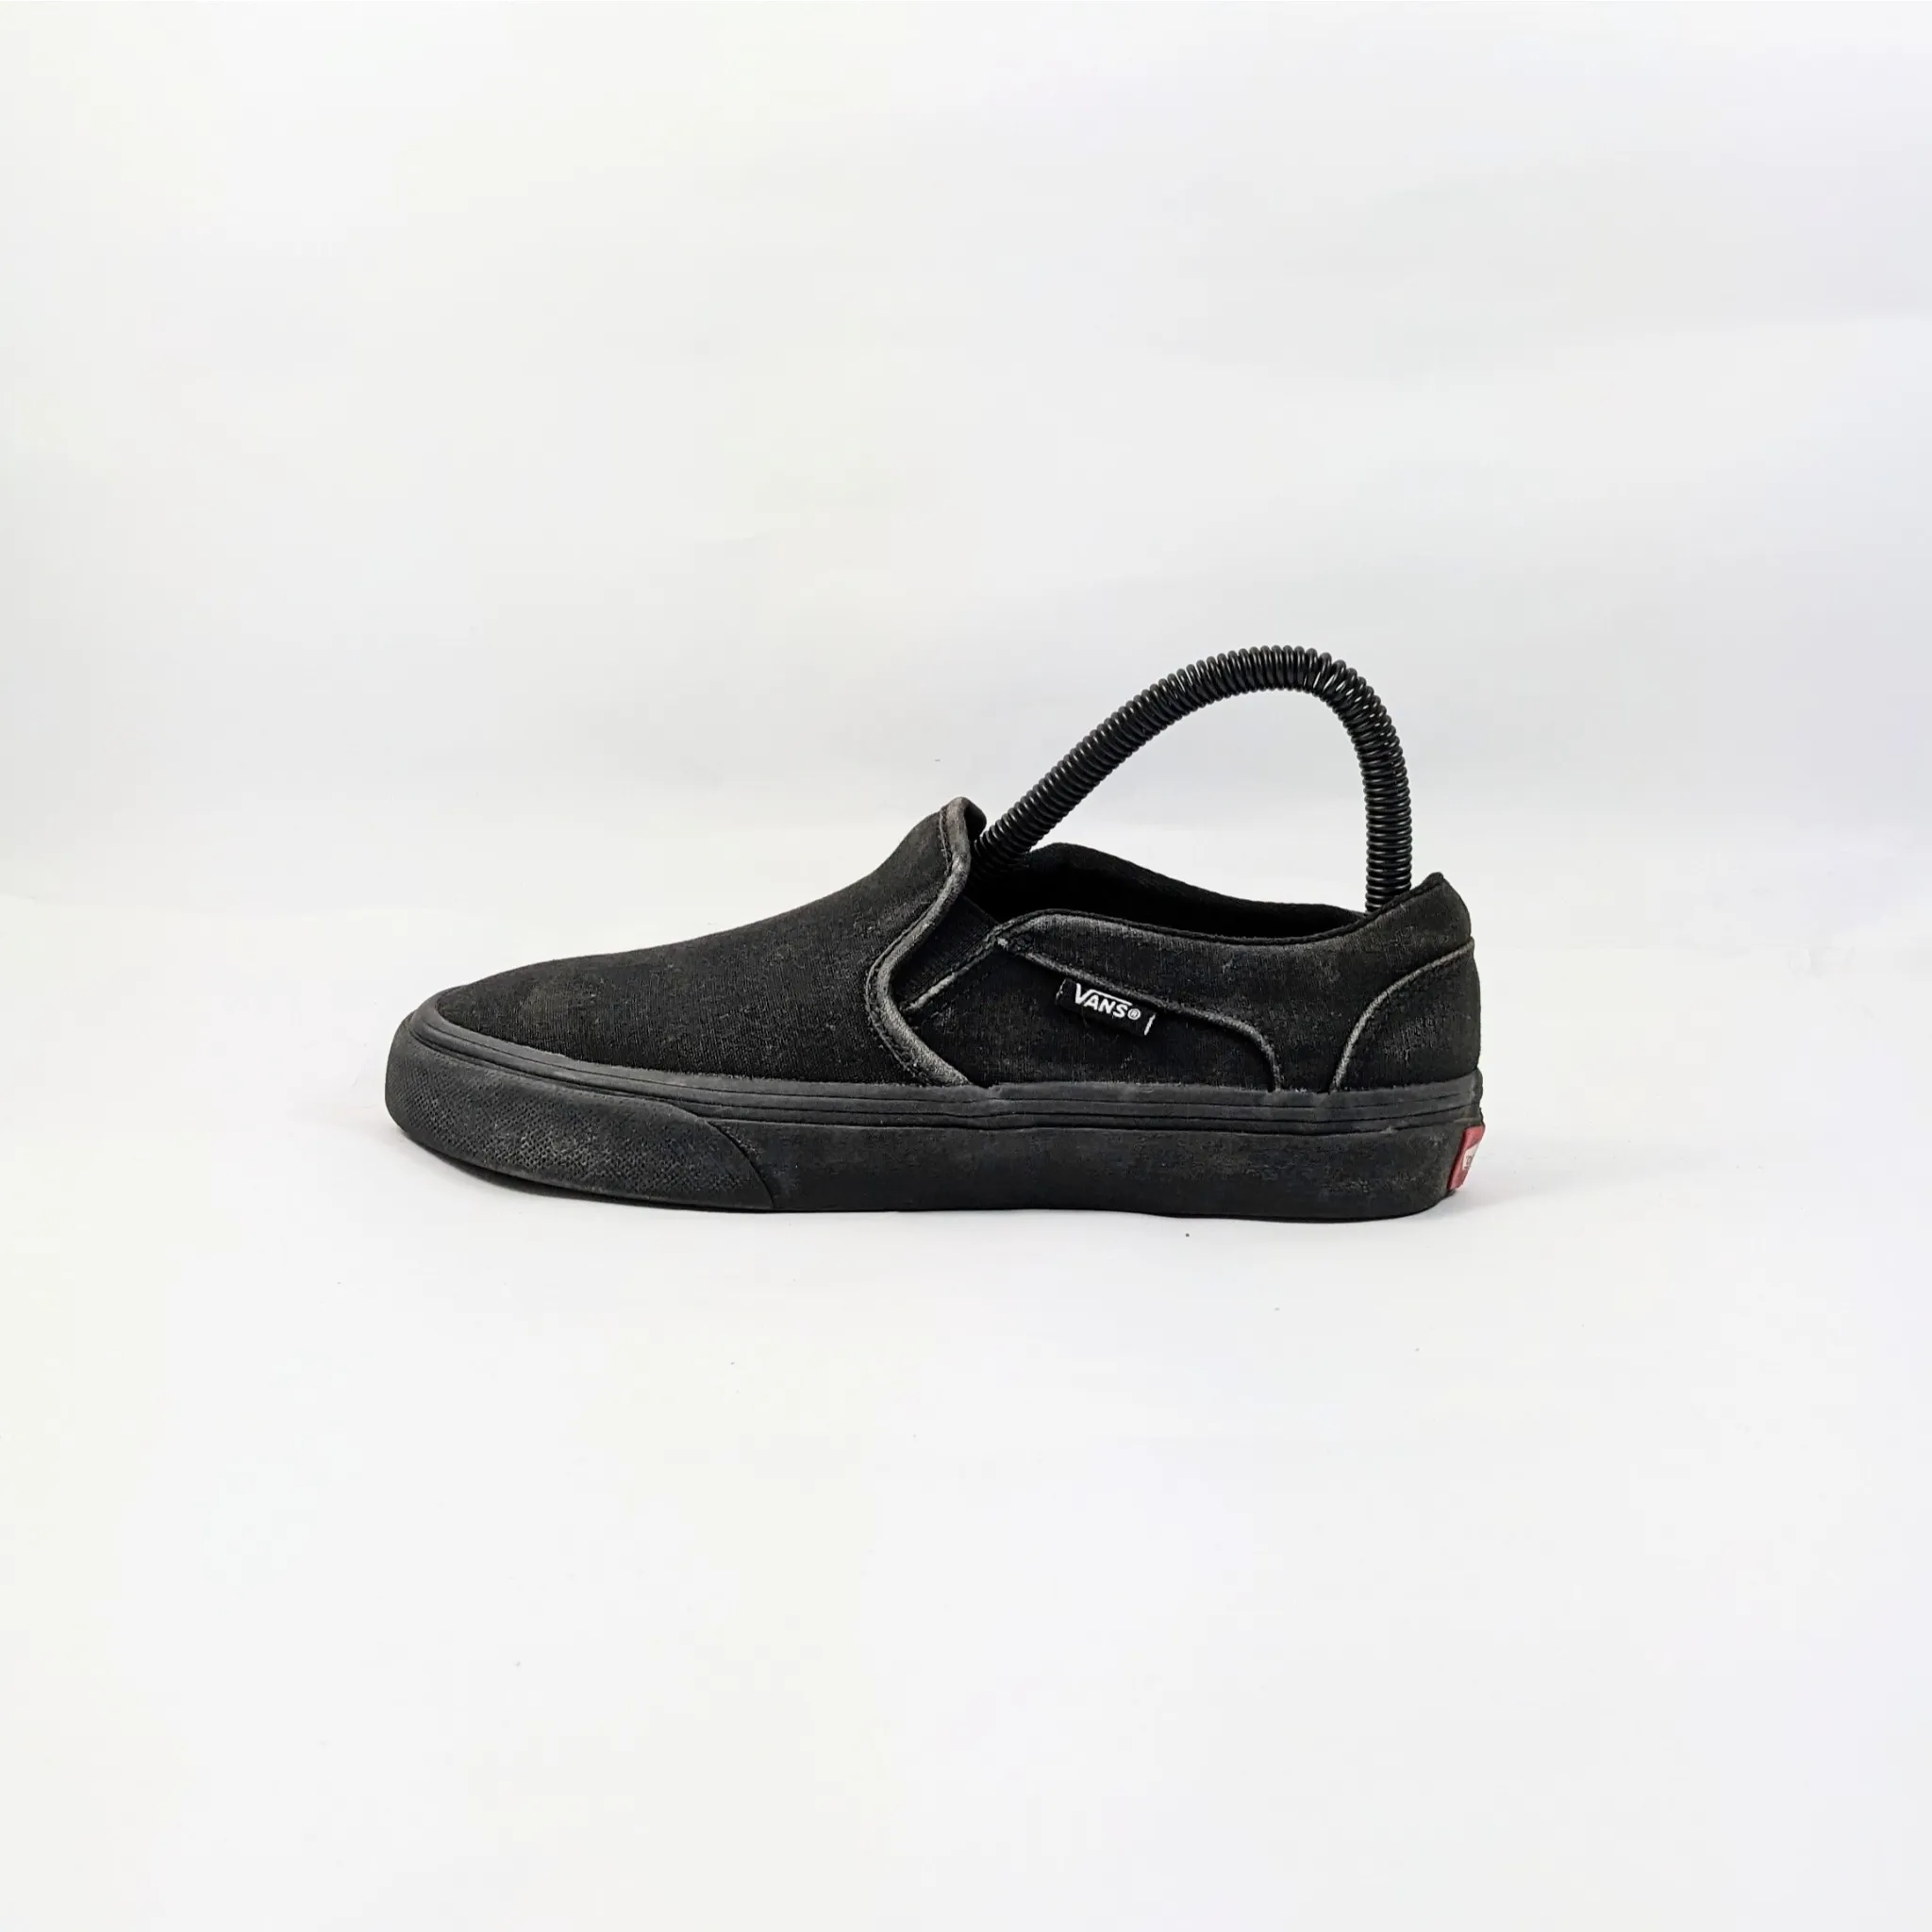 Vans Black Sneakers